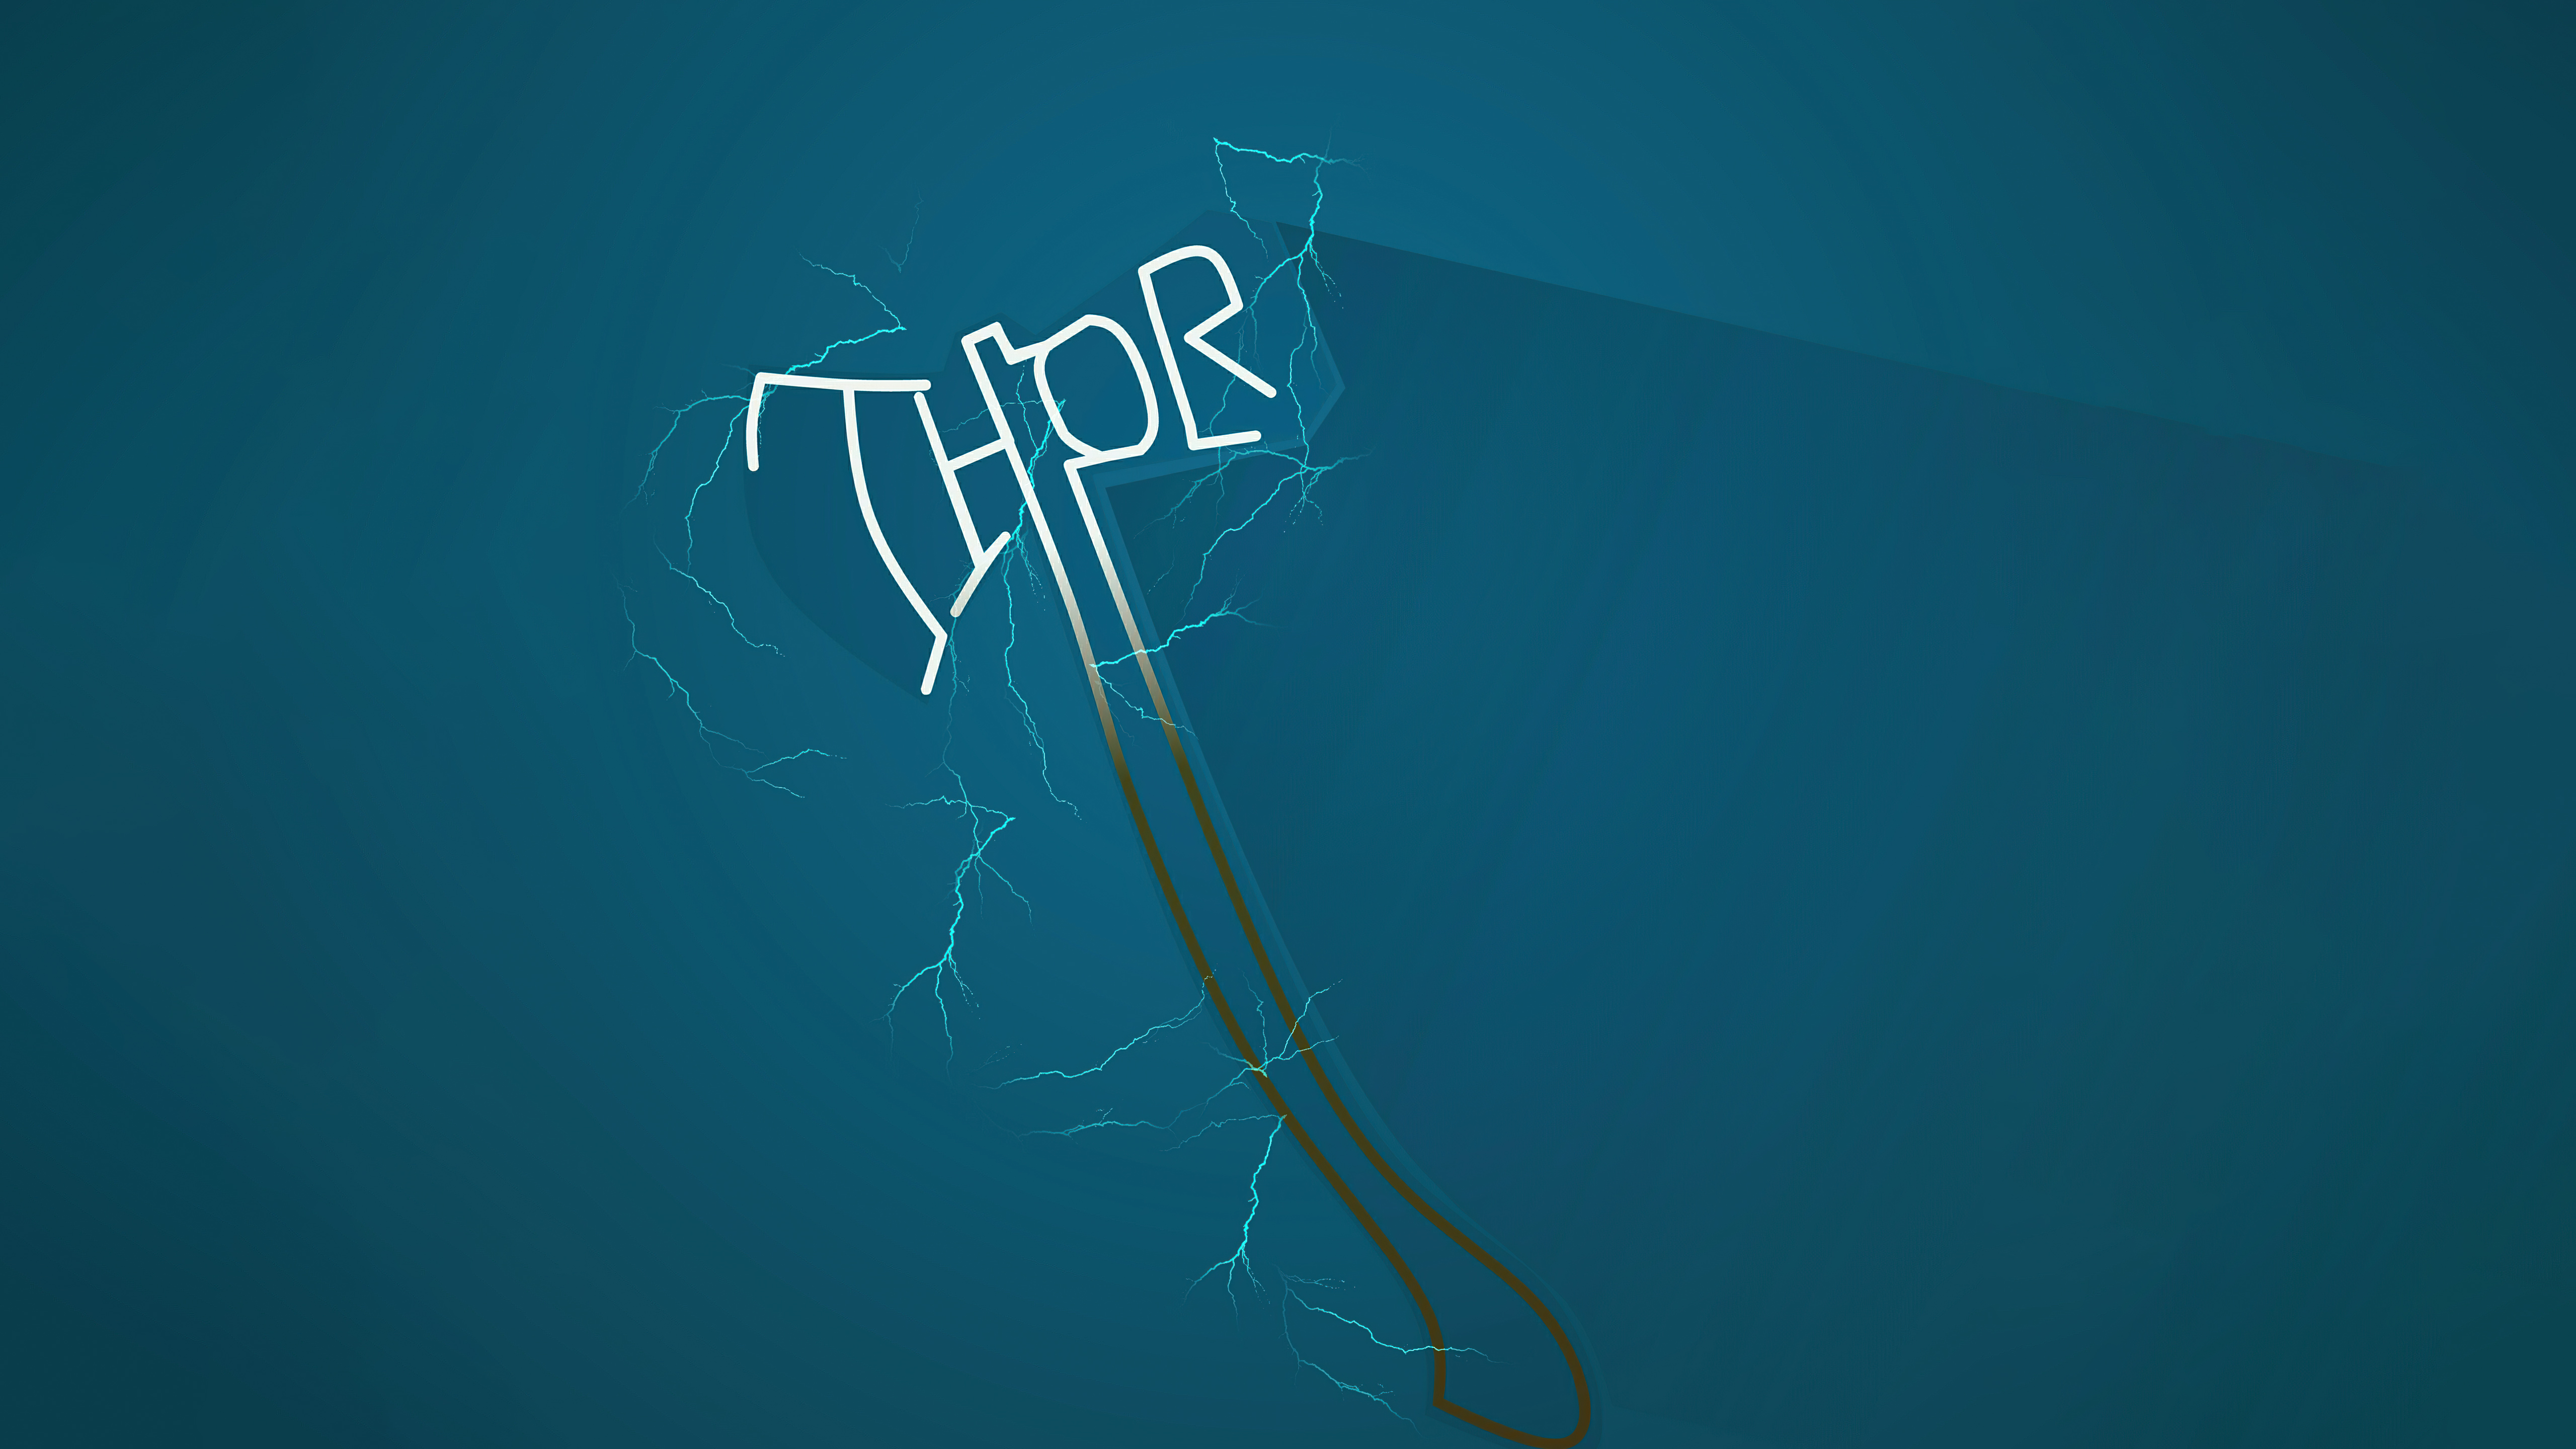 Thor Minimal 4K 2021 Art Wallpapers